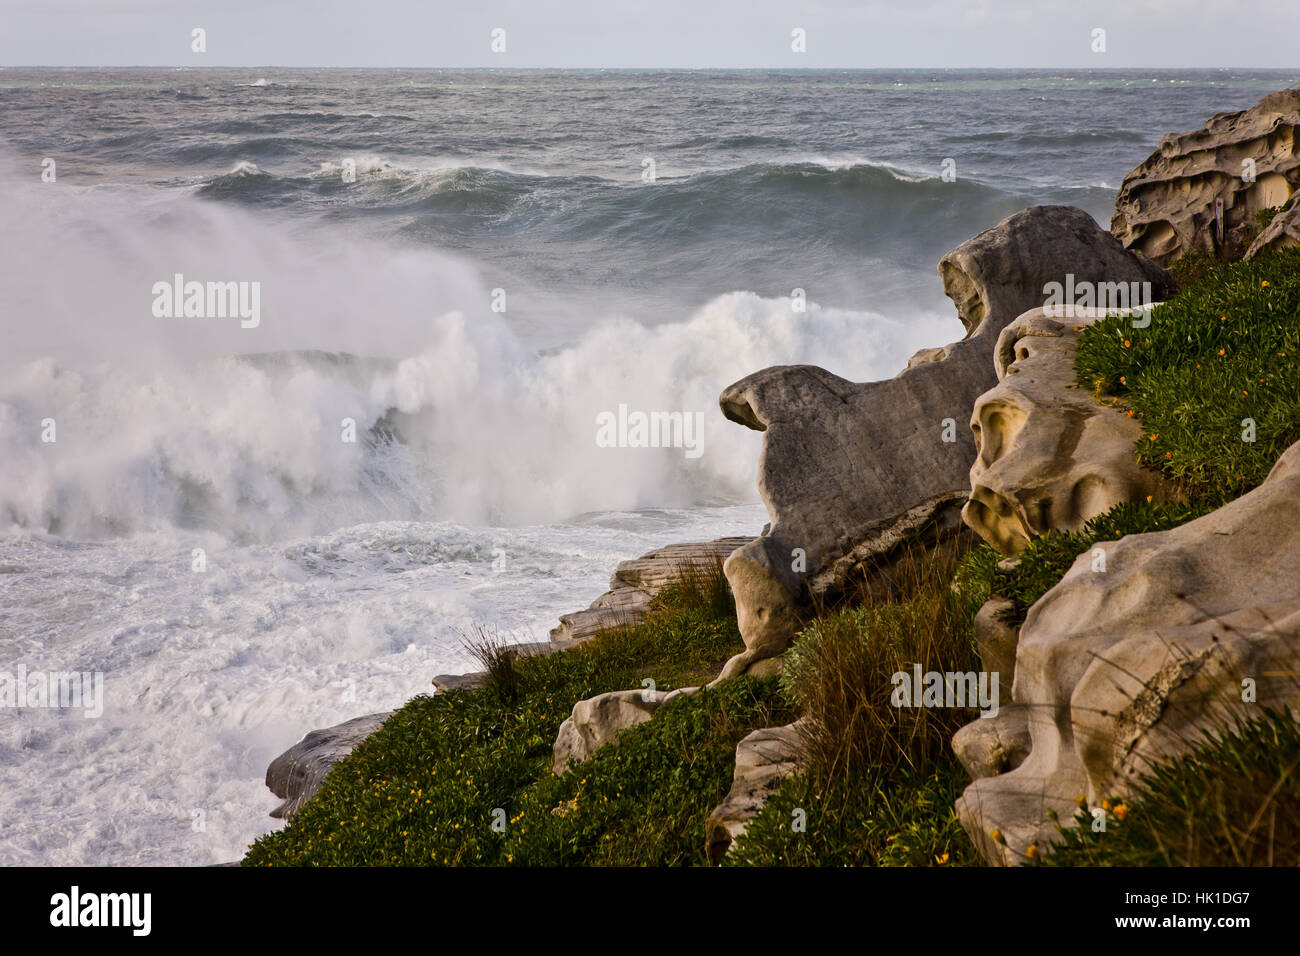 beach, seaside, the beach, seashore, australia, coast, break, stone, wild, Stock Photo